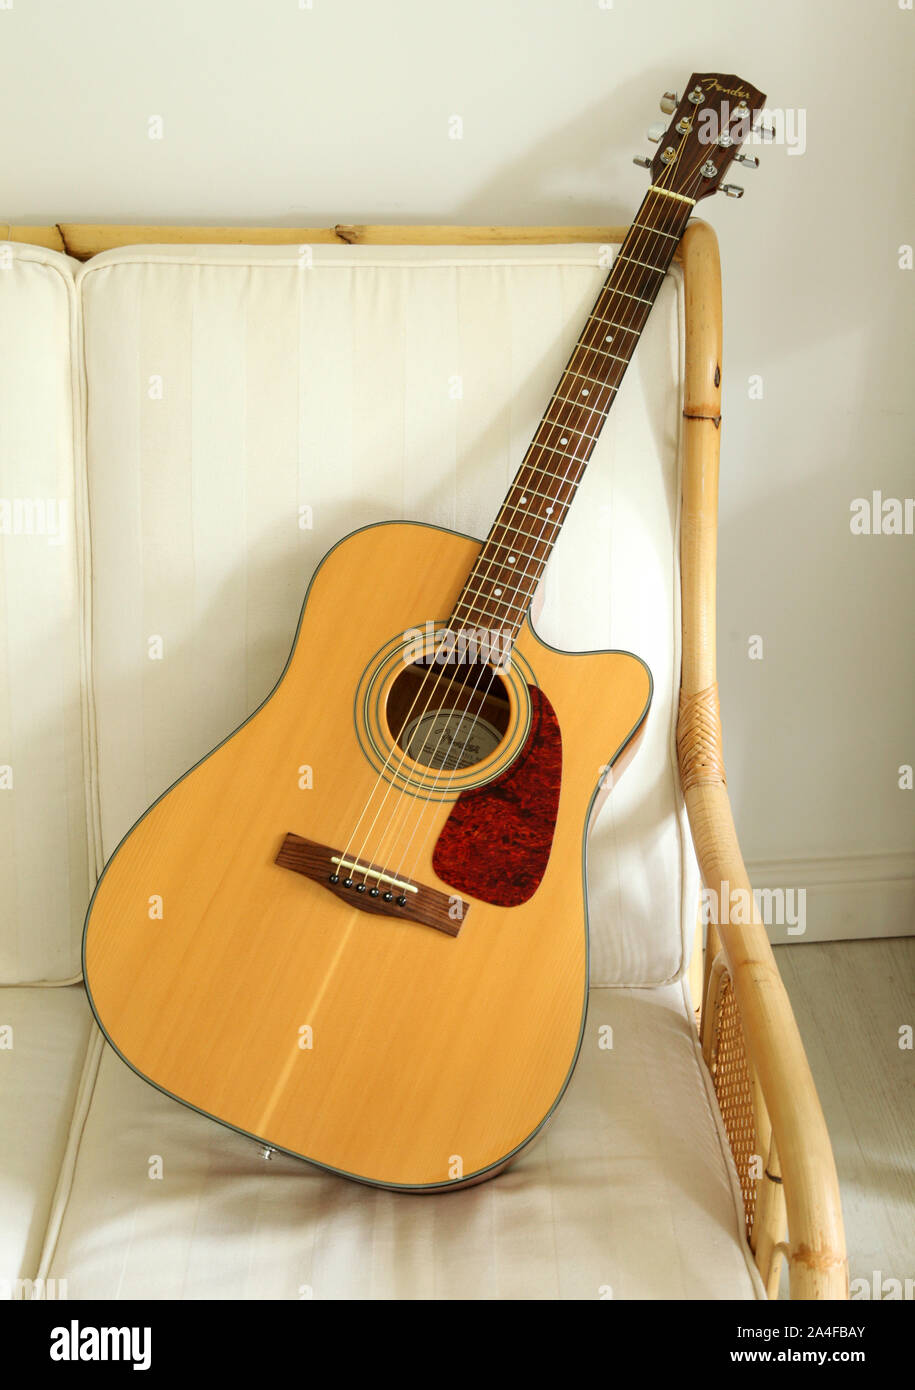 Une Fender guitare acoustique sur un canapé en rotin. Banque D'Images